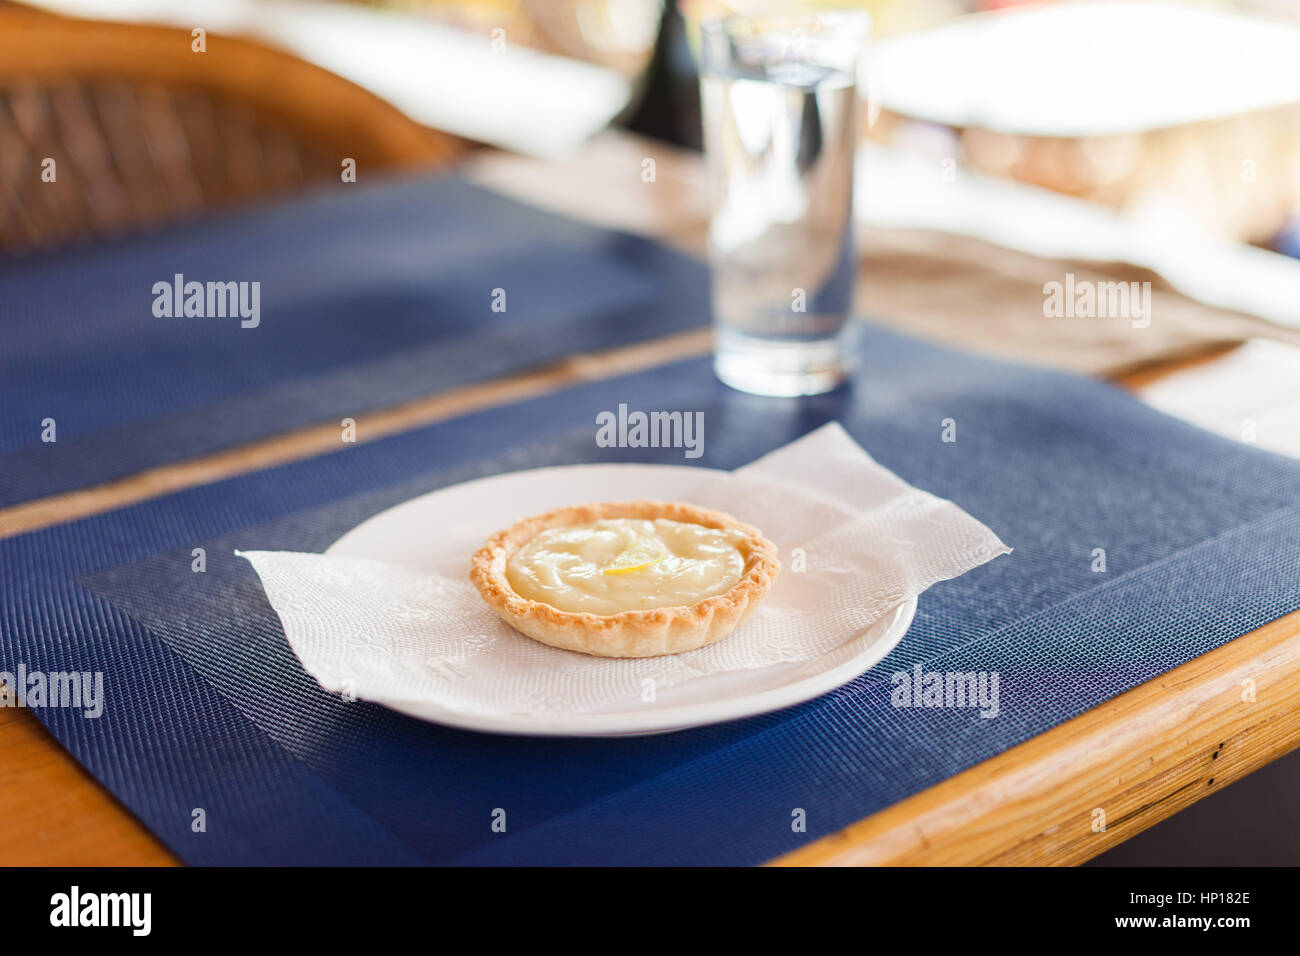 Crostata al limone con crema pasticcera riempimento e le fette di limone su una piastra bianca, blu opaco, e legno cafe tabella Foto Stock